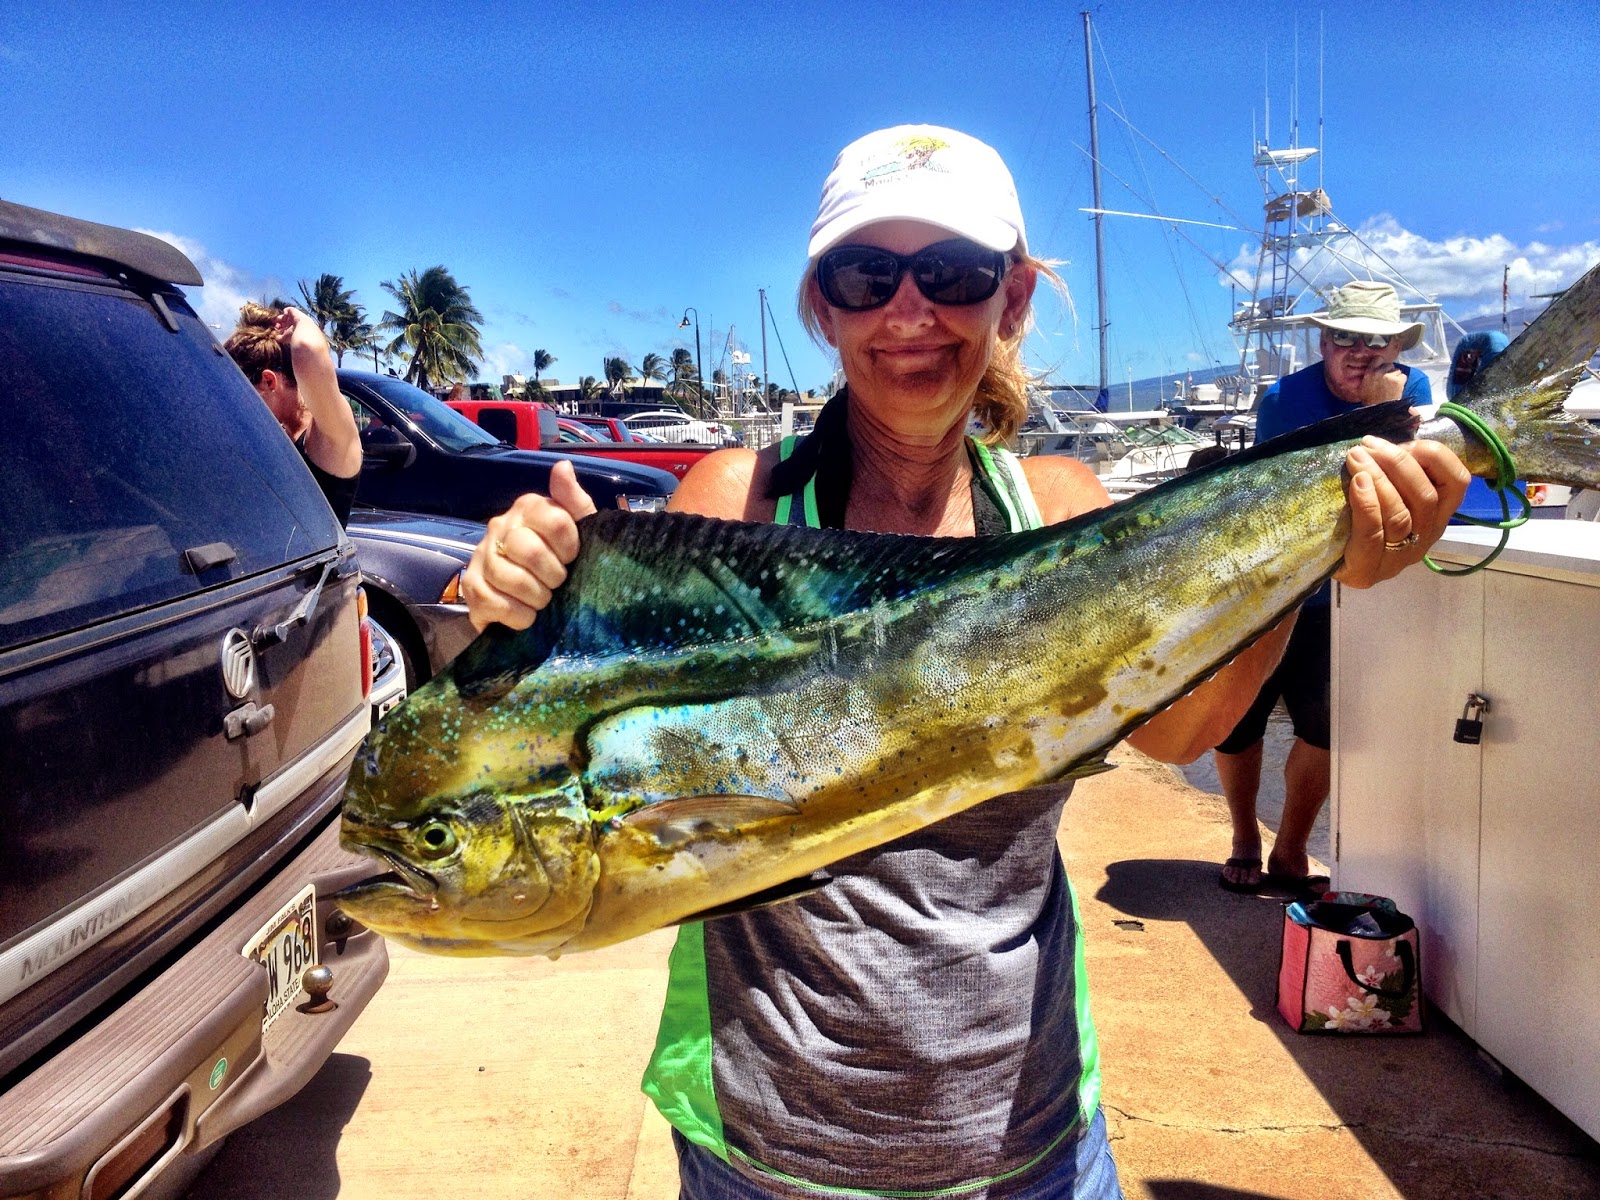 LuAnn catches a Mahi Mahi while sport fishing last week on Rascal